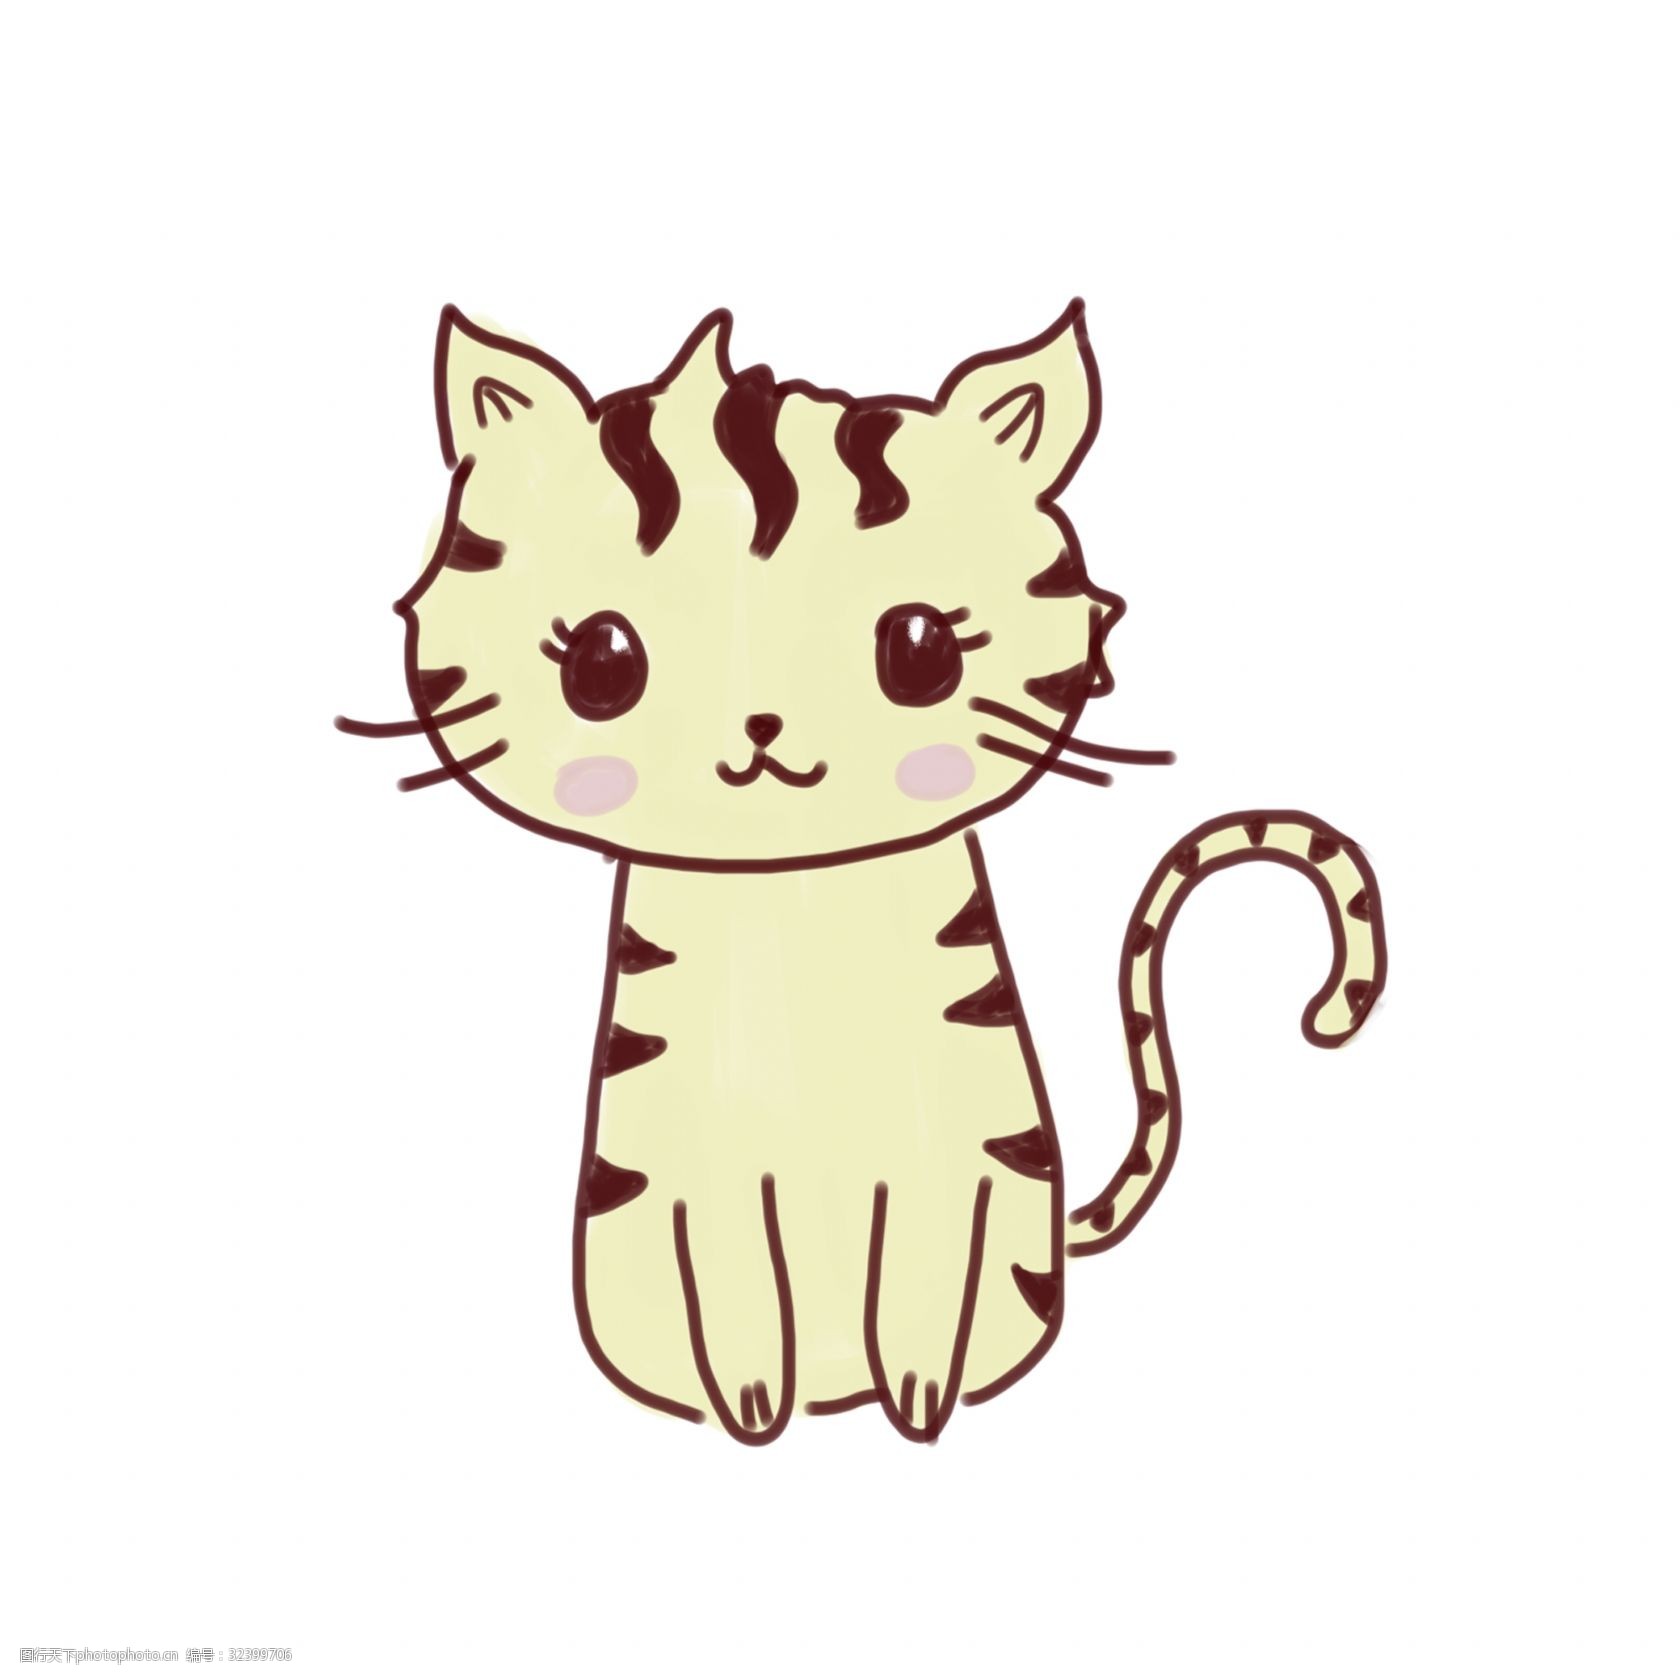 关键词:卡通 手绘可爱小猫咪 手绘 简单 小猫咪 少女心 可爱 免抠图